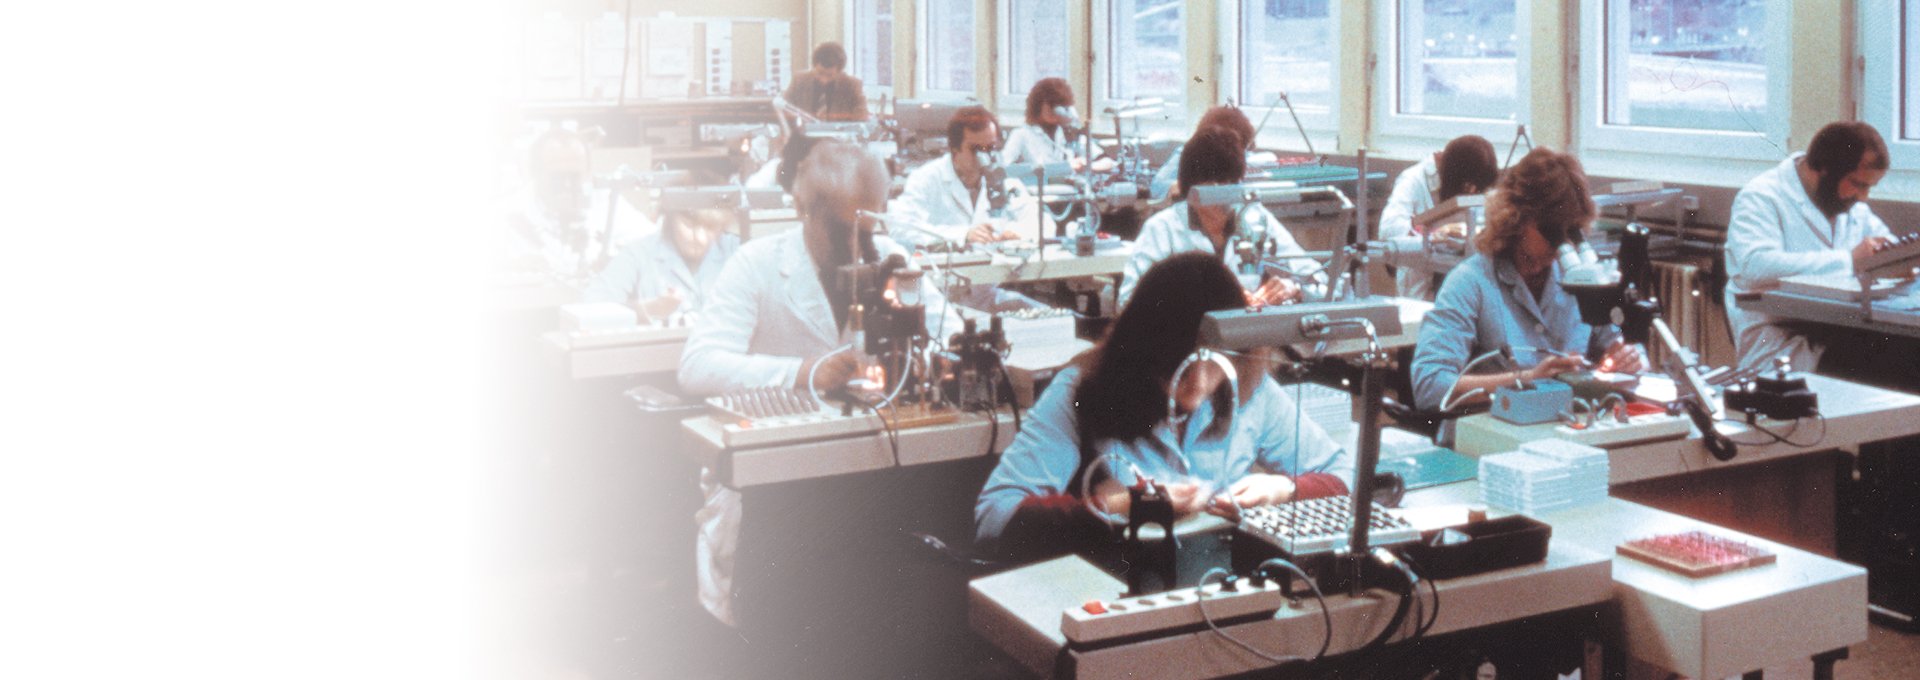 Gammelt billede af dedikerede medarbejdere i laboratoriekitler, der arbejder i produktionen af Bernafon høreapparater, 1982